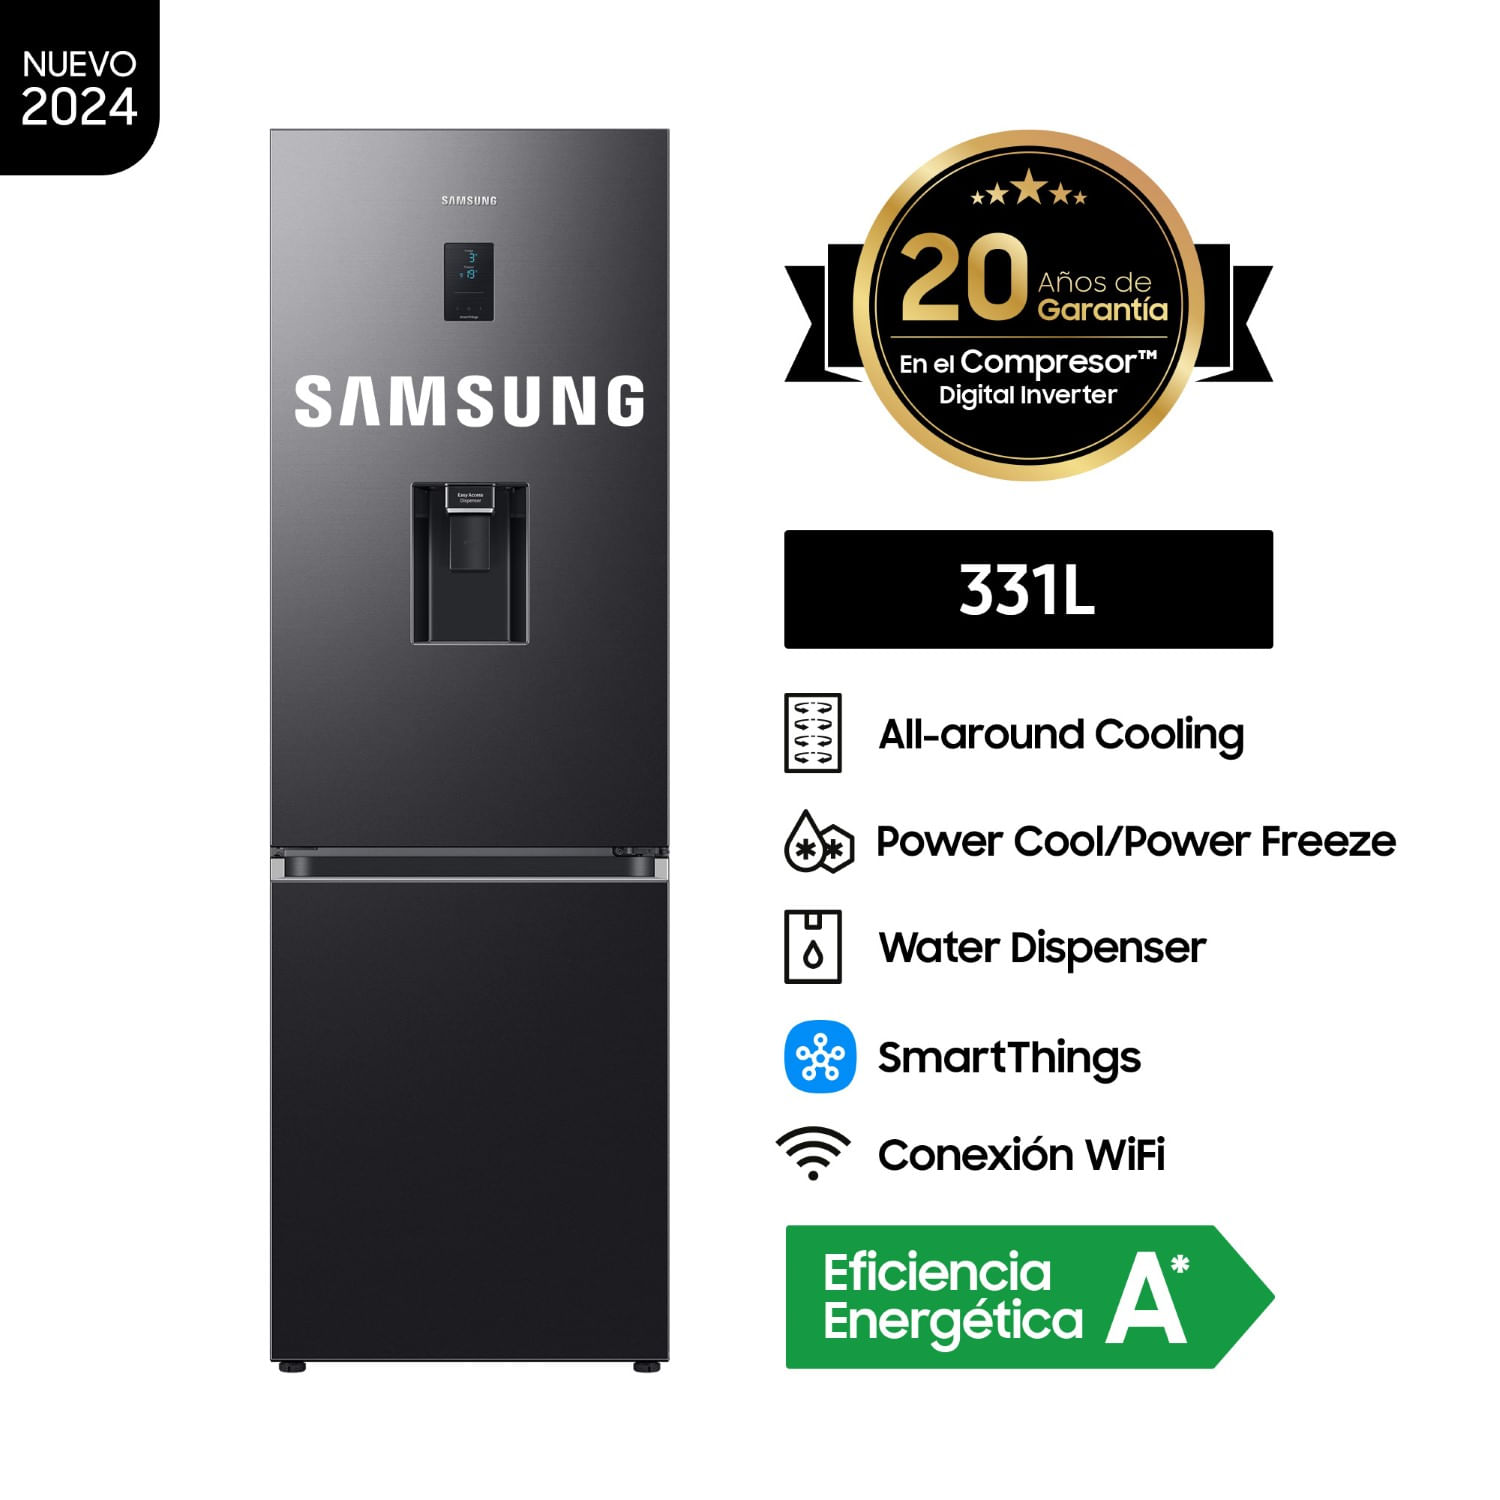 Refrigeradora Samsung All Around Cooling 331Lt Negra RB34C652EB1/PE